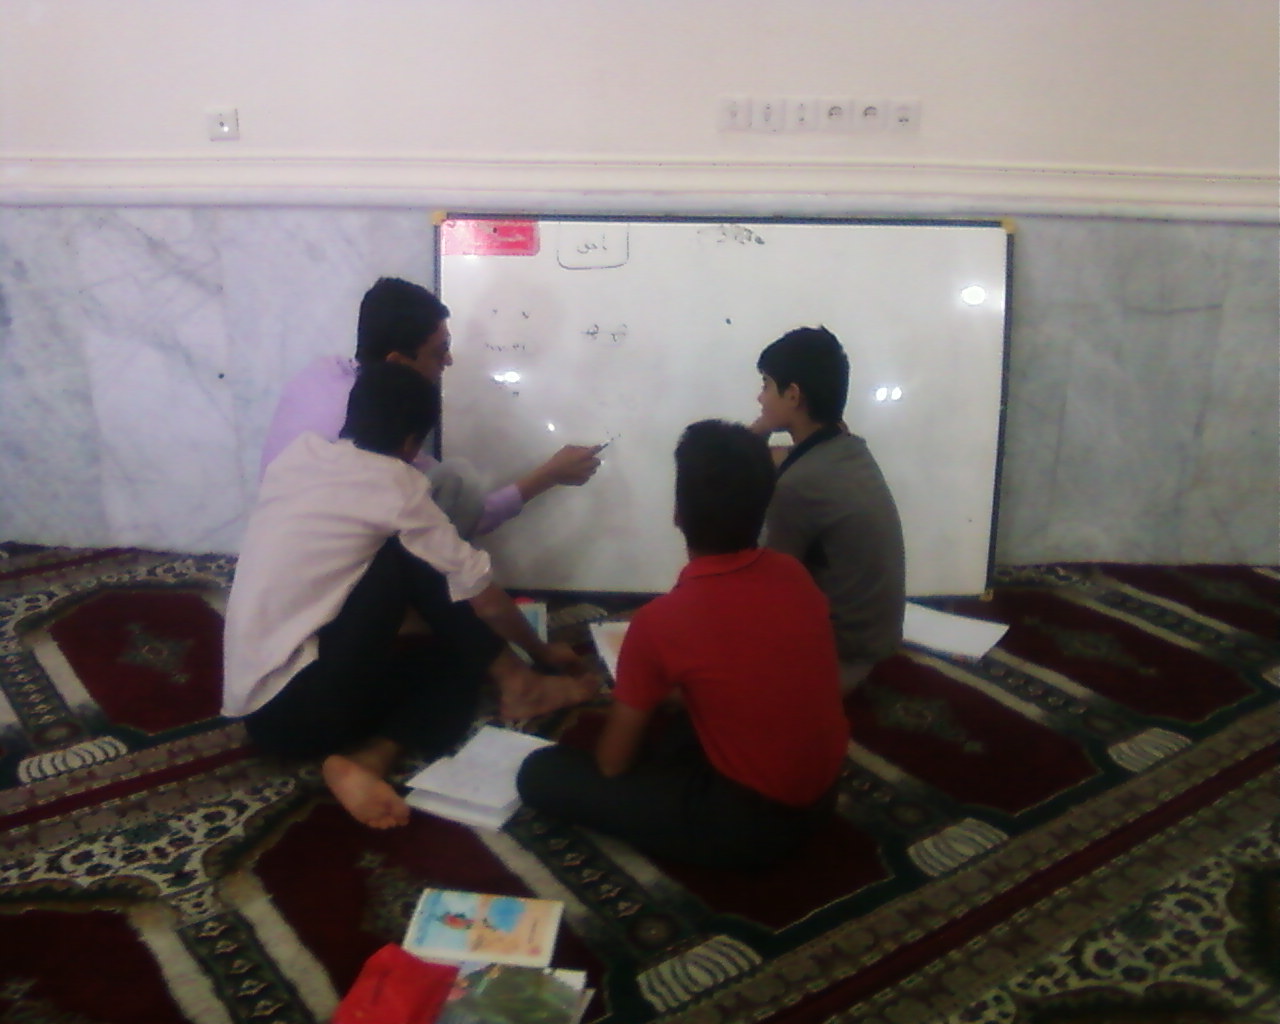 کانون بقیة الله برازجان همگام با معلم و مدرسه 